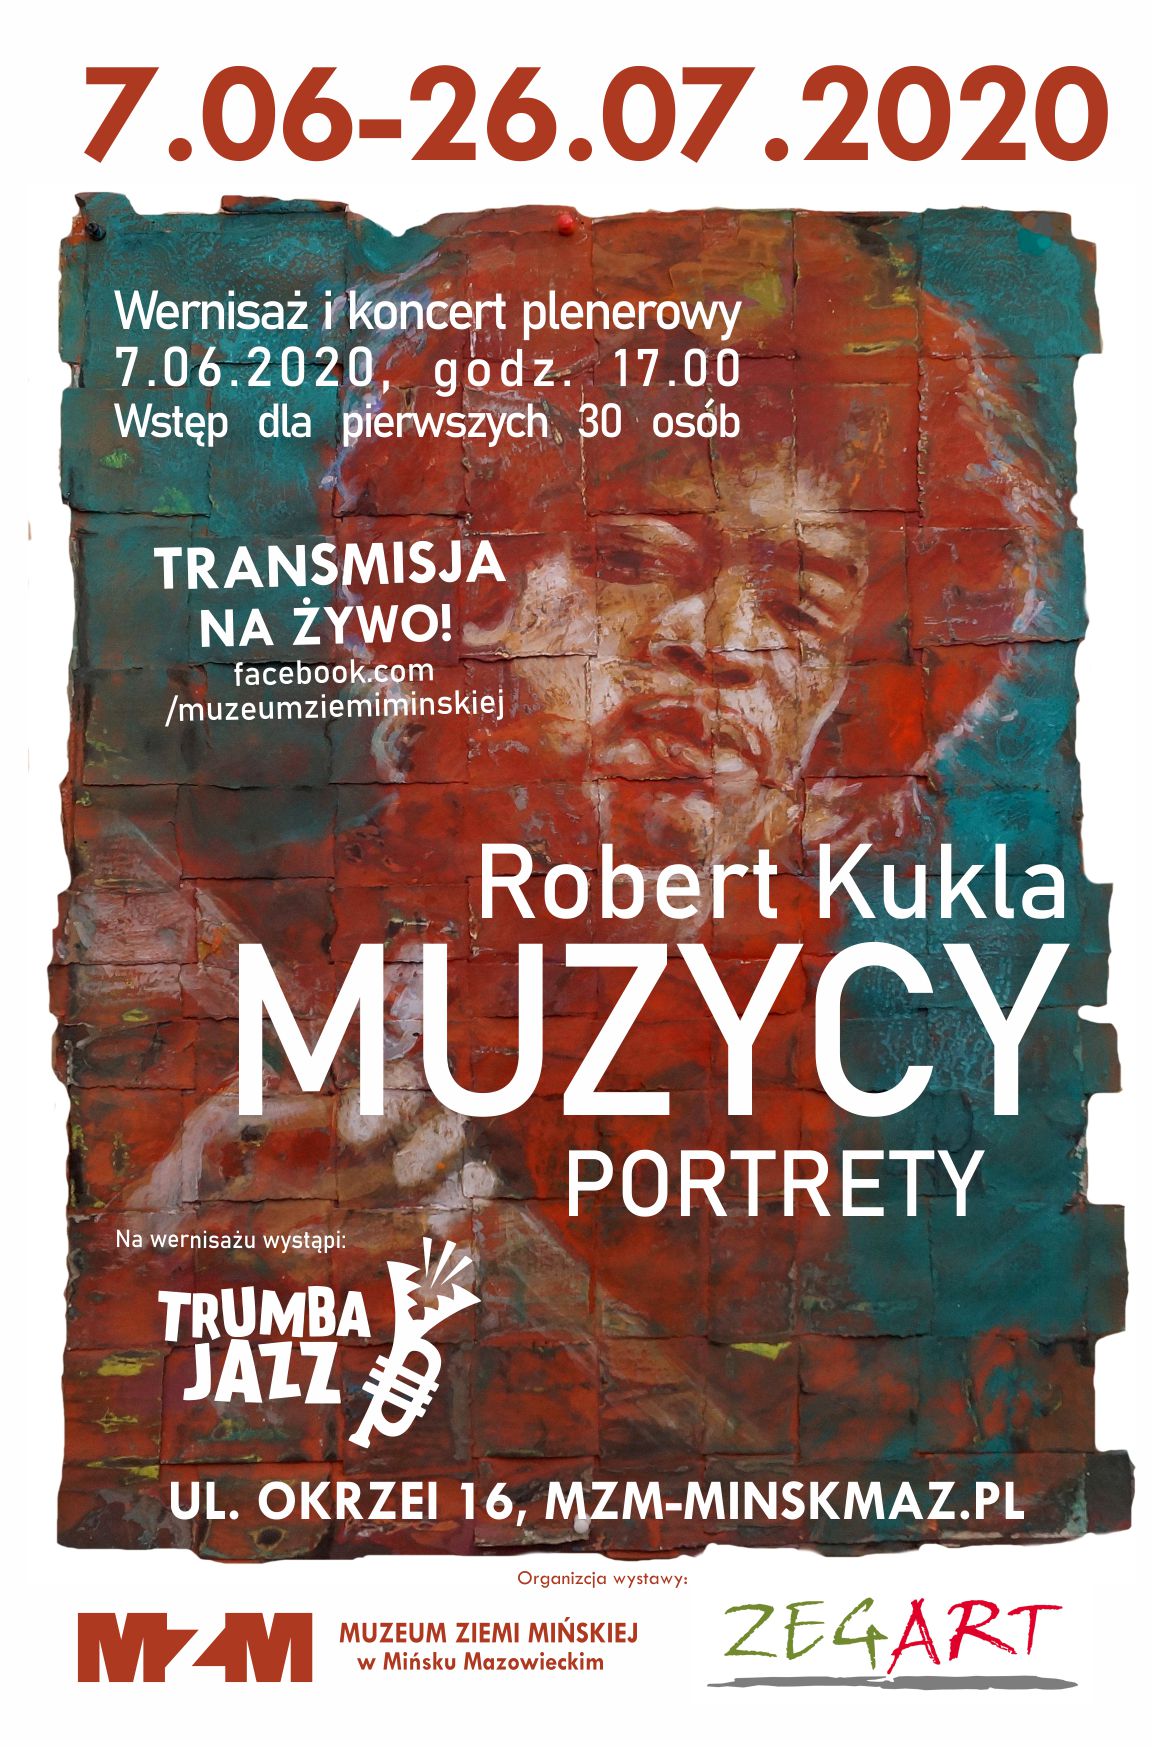 MUZYCY - portrety Robert Kukla